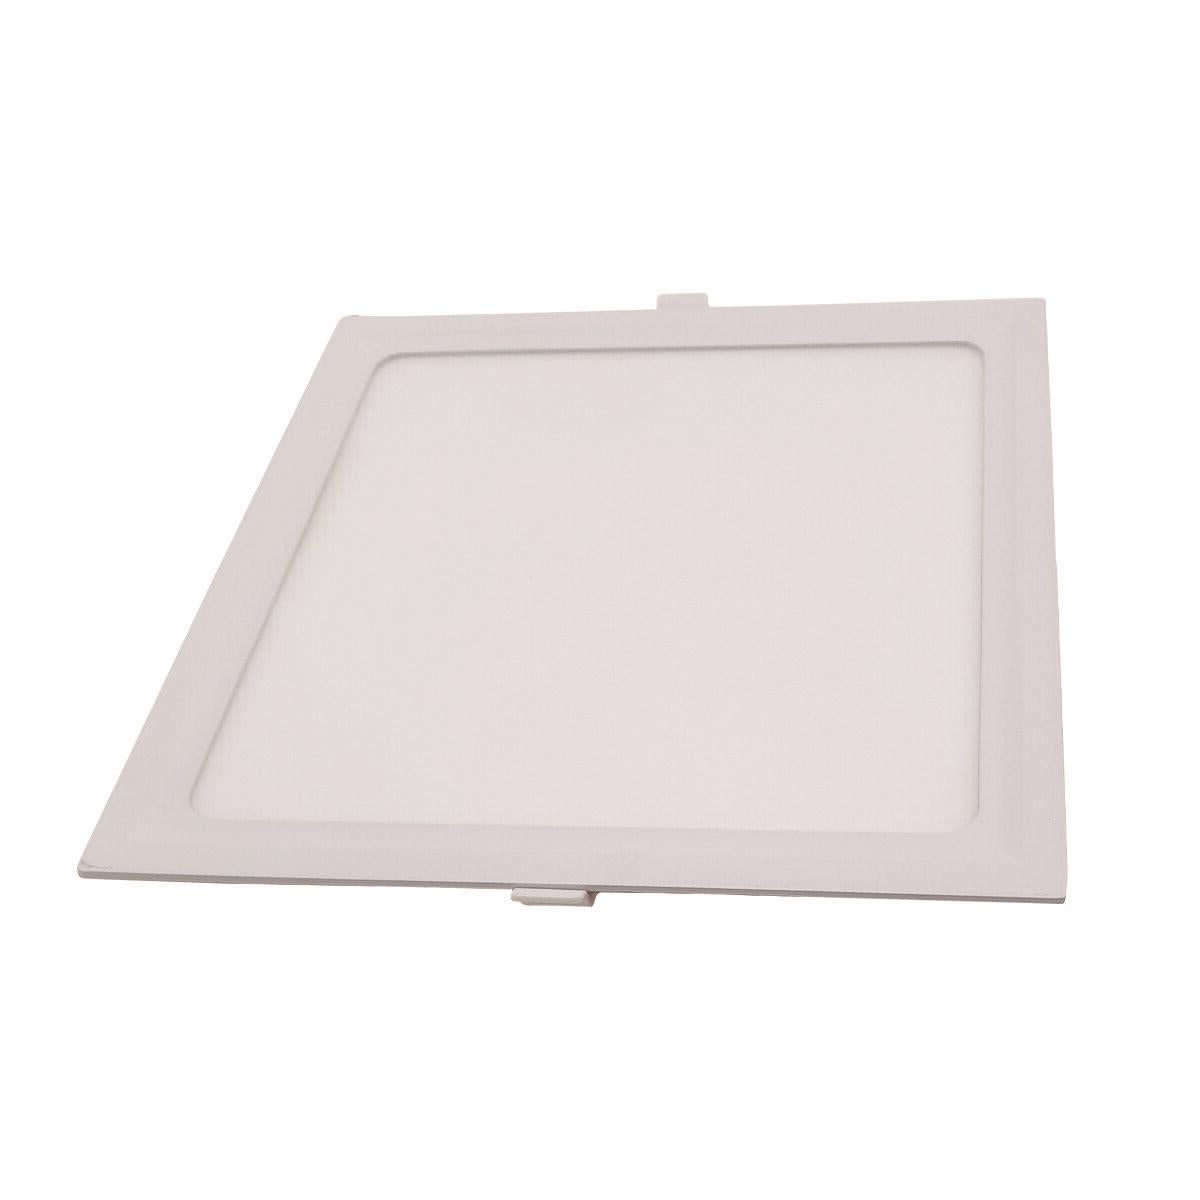 LED Ceiling Lights Slim Square Panel Down Light Livingroom Kitchen Bathroom UK~1436 - LEDSone UK Ltd